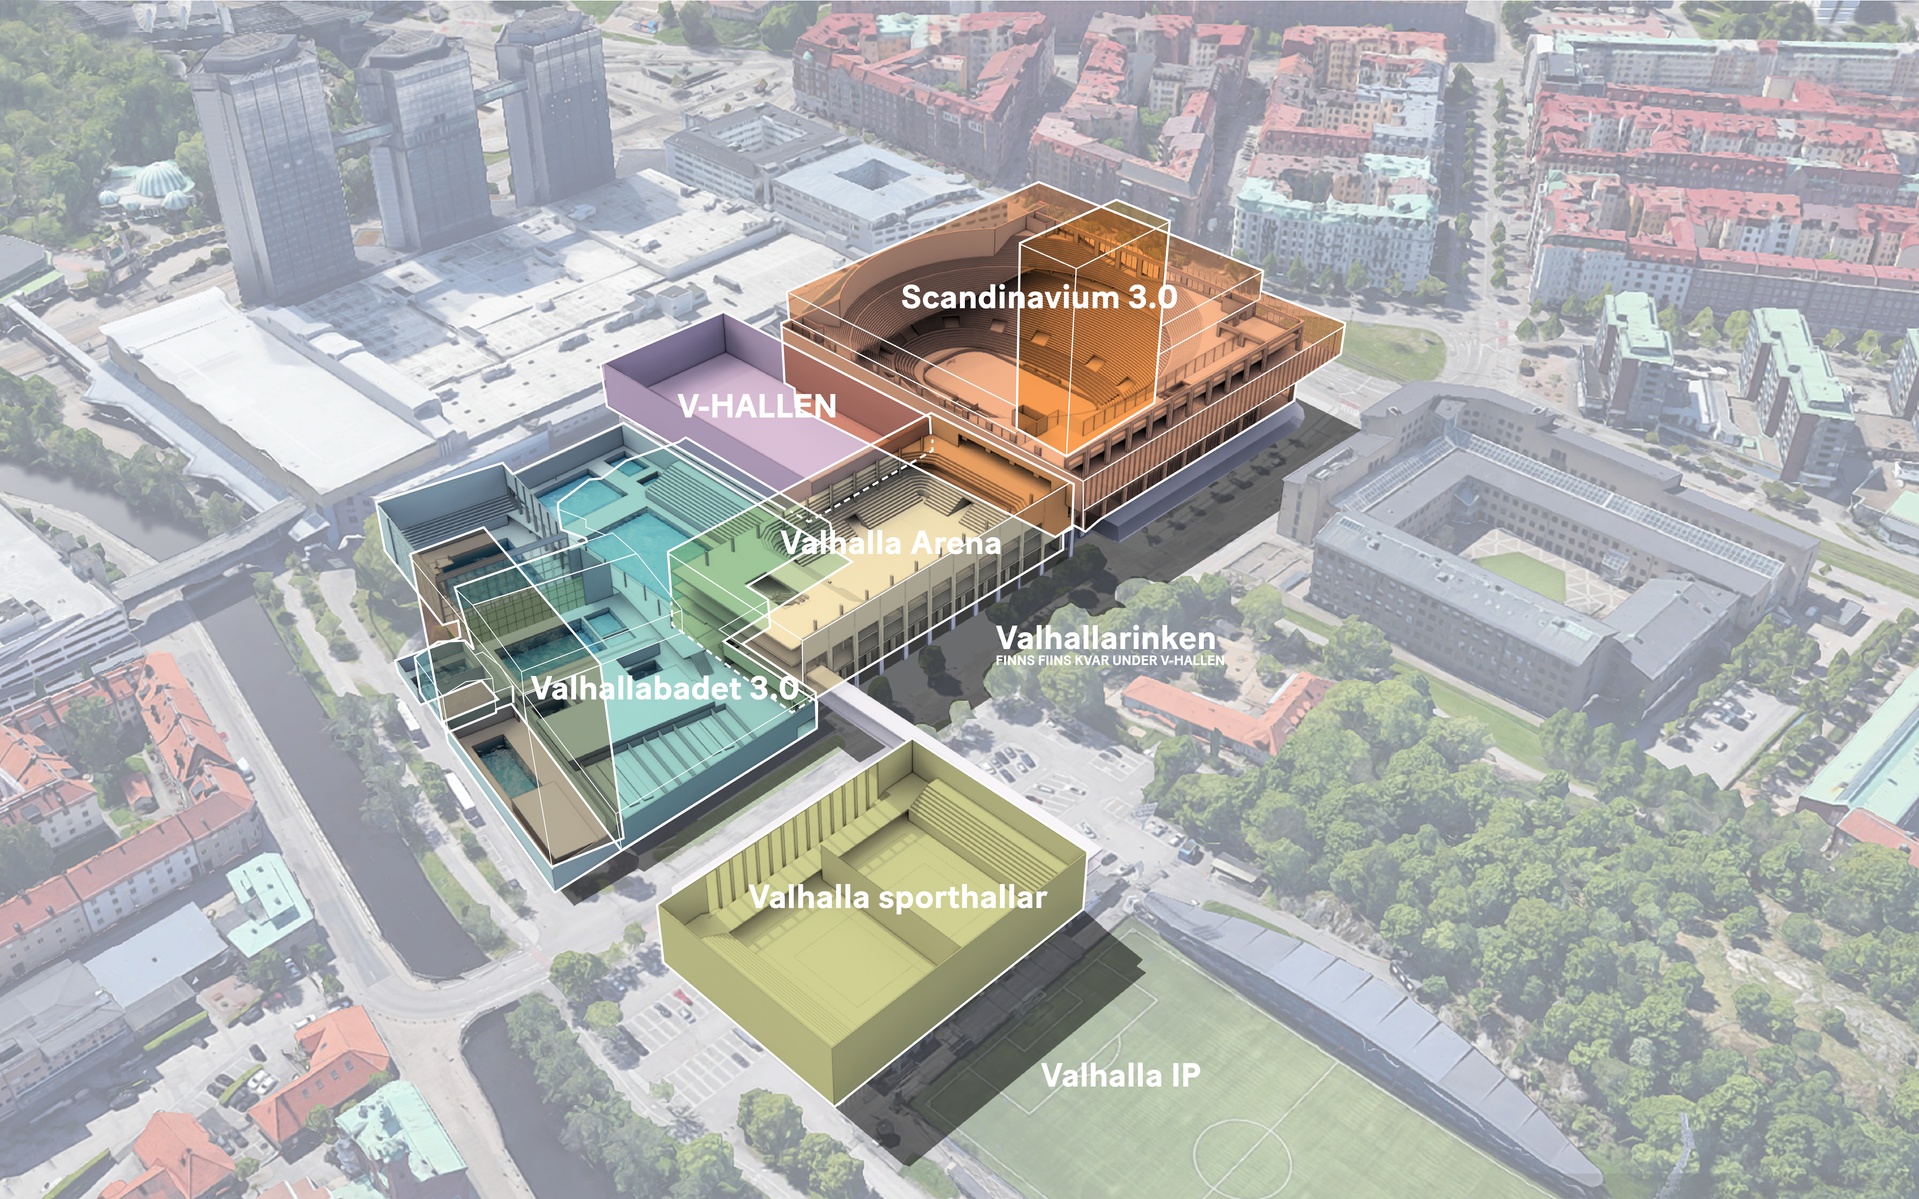 Visualisering översikt förslag Arenakvarteret 2030 av Krook & Tjäder